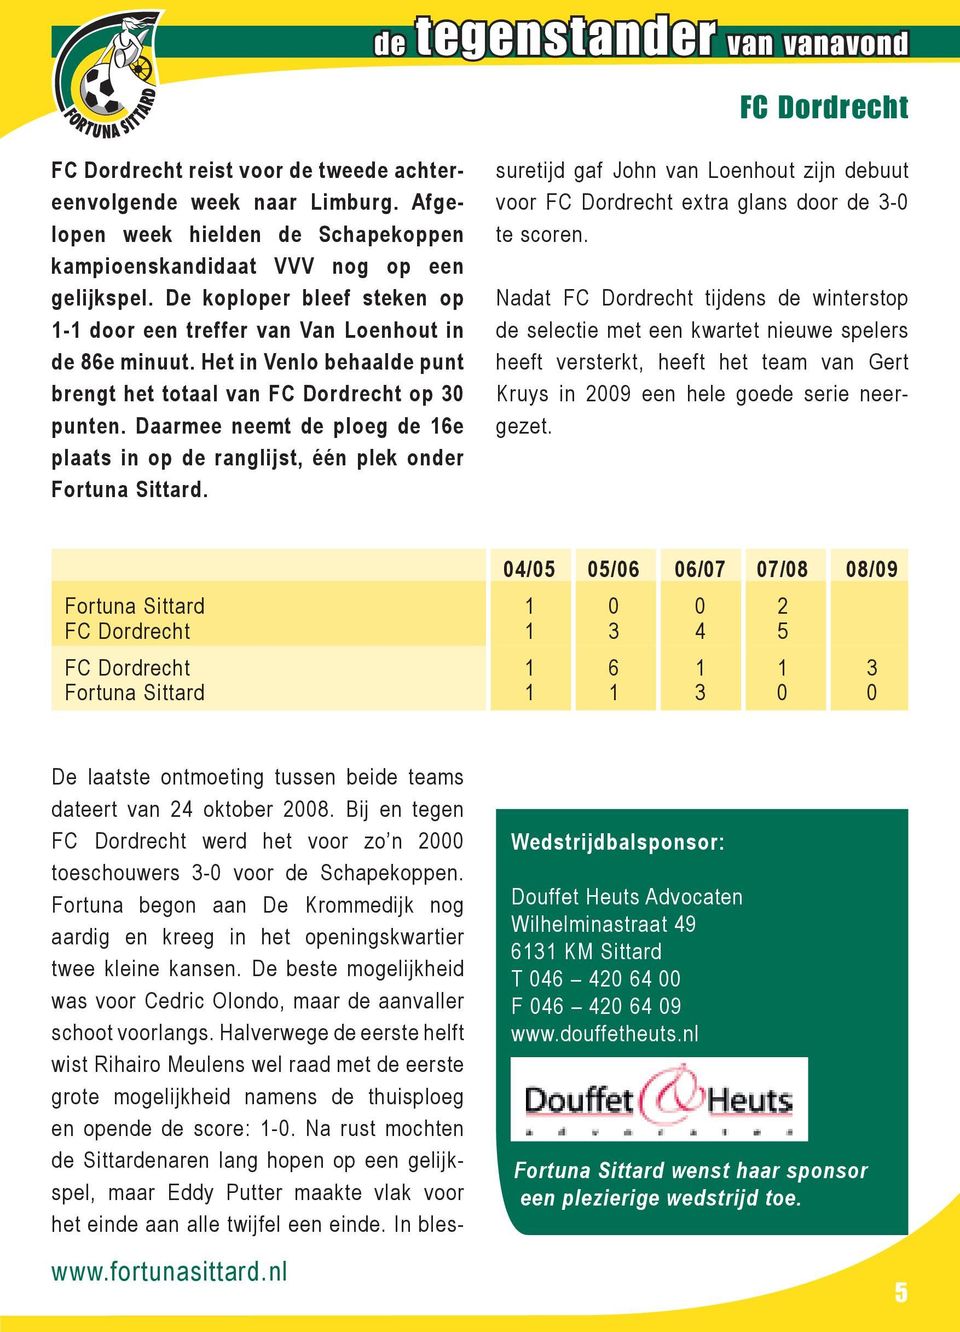 Daarmee neemt de ploeg de 16e plaats in op de ranglijst, één plek onder Fortuna Sittard. suretijd gaf John van Loenhout zijn debuut voor FC Dordrecht extra glans door de 3-0 te scoren.